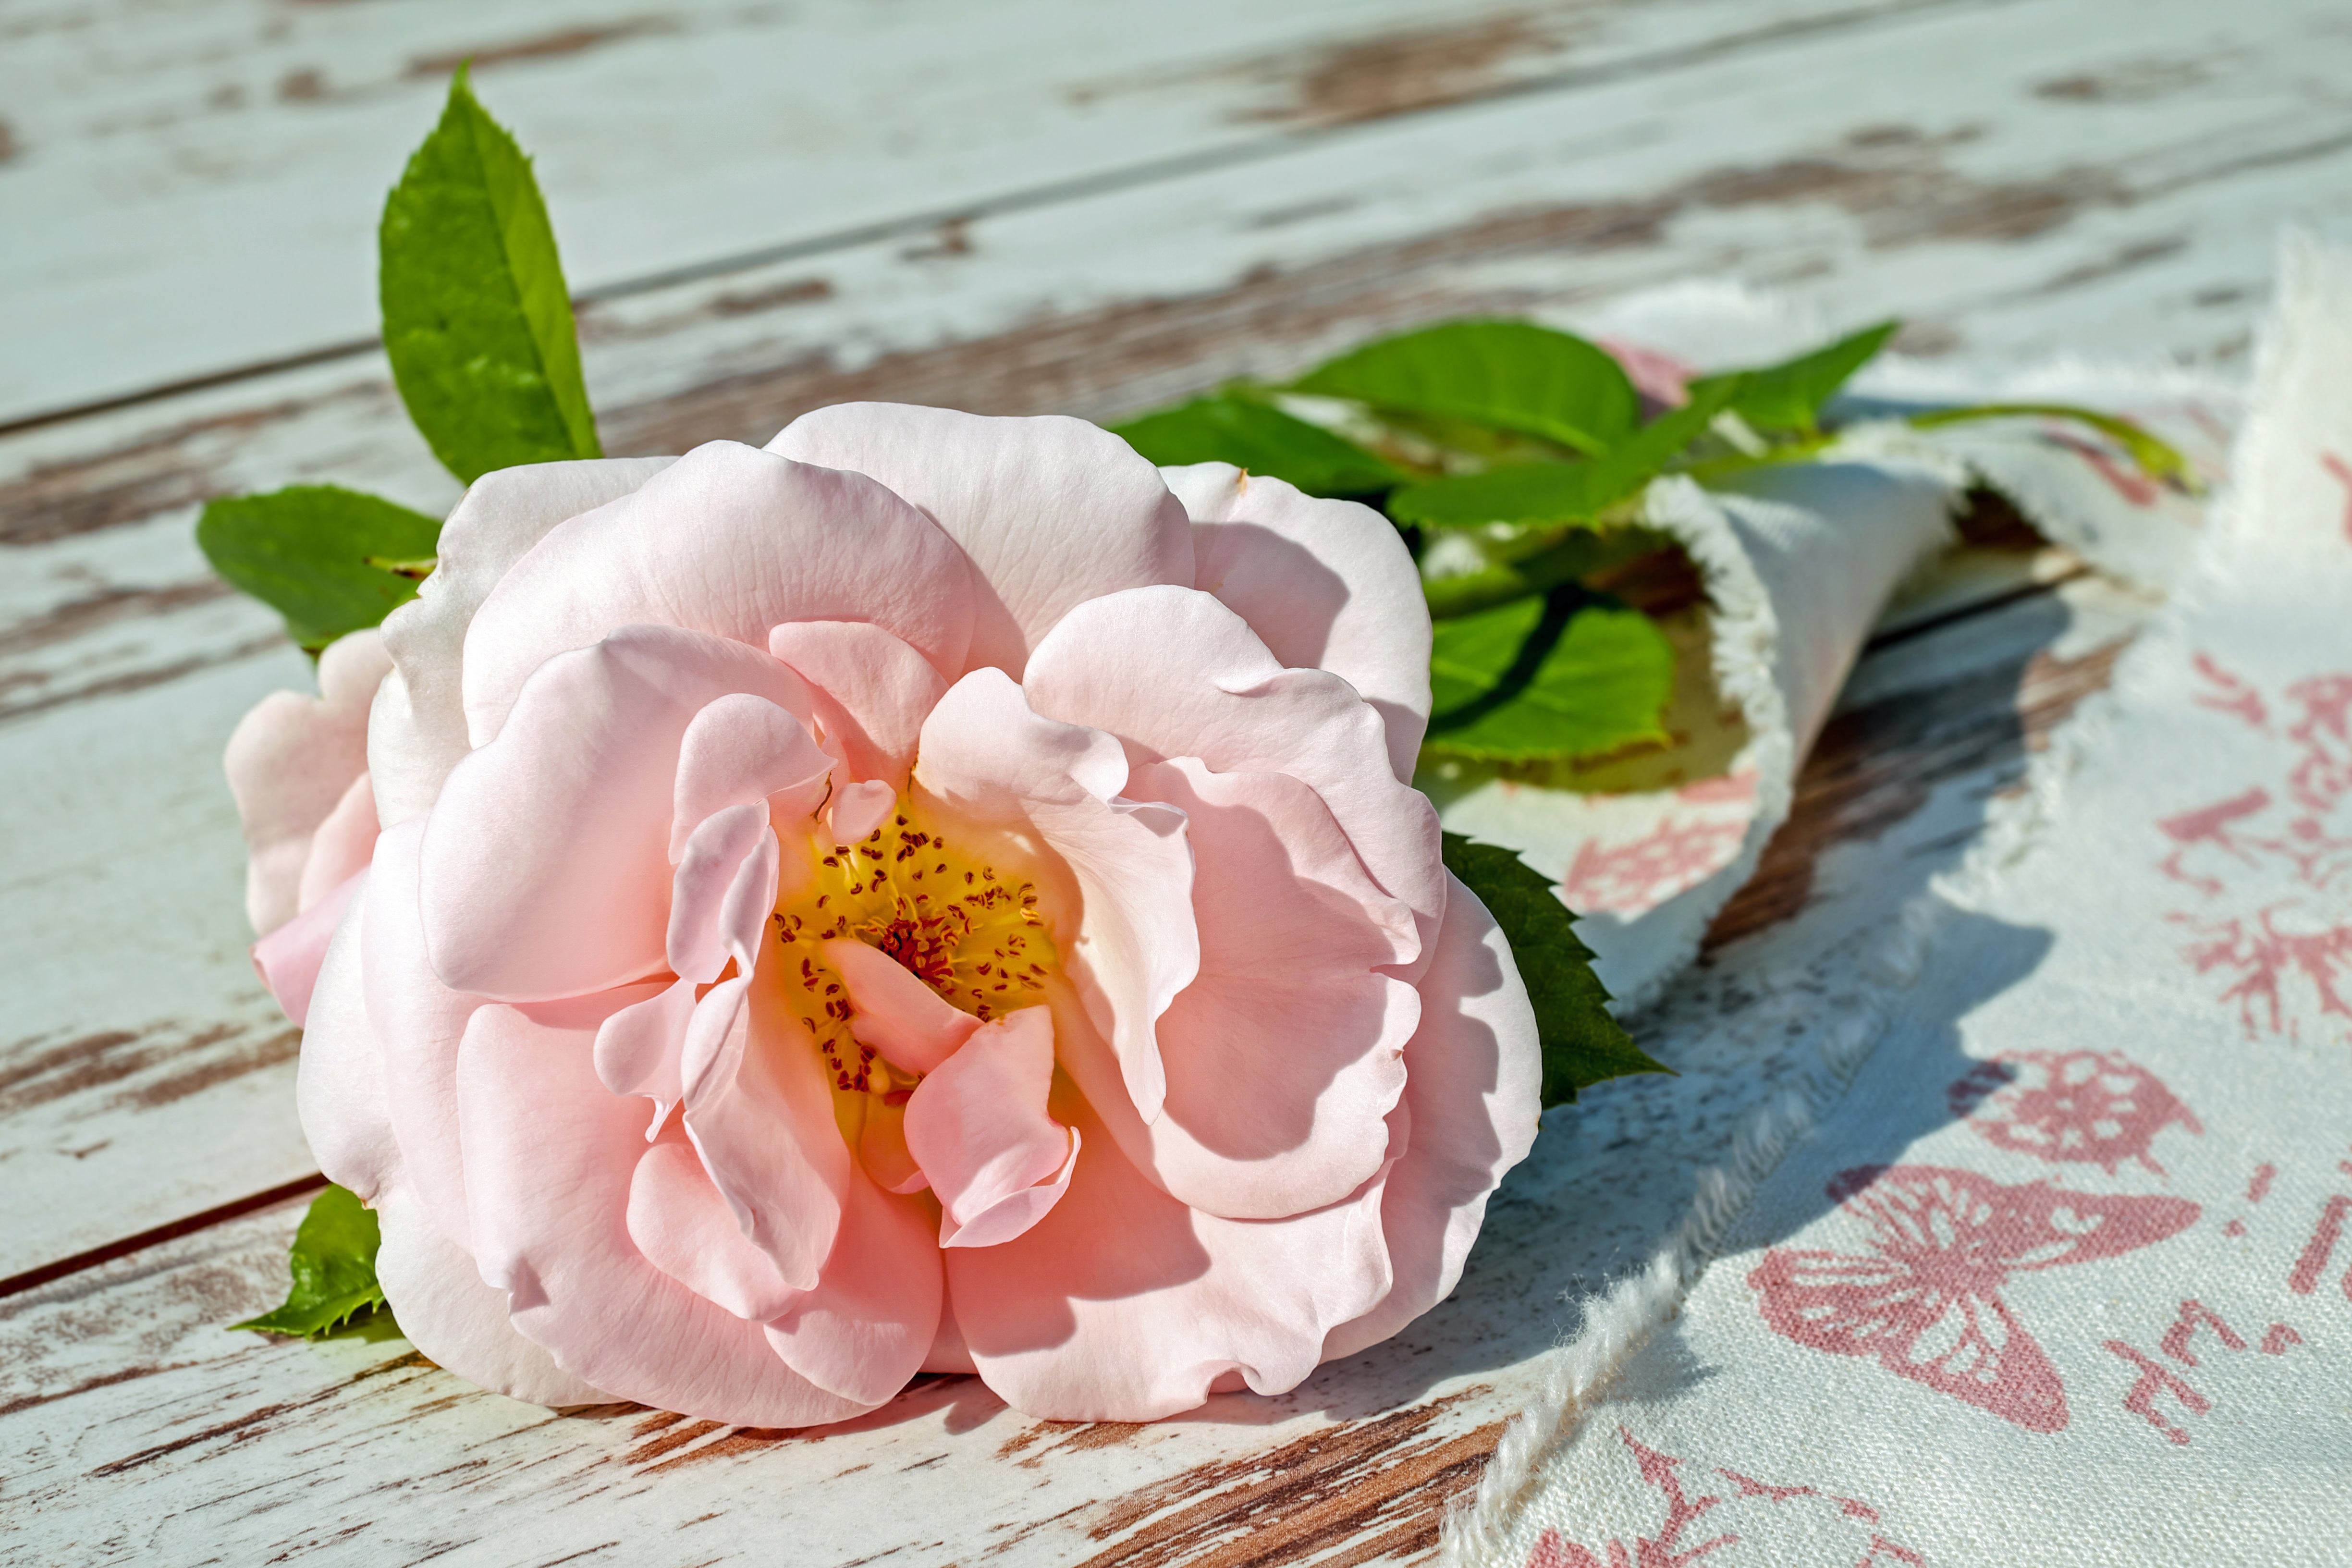 Zastaki.com - Розовая садовая роза лежит на лавке